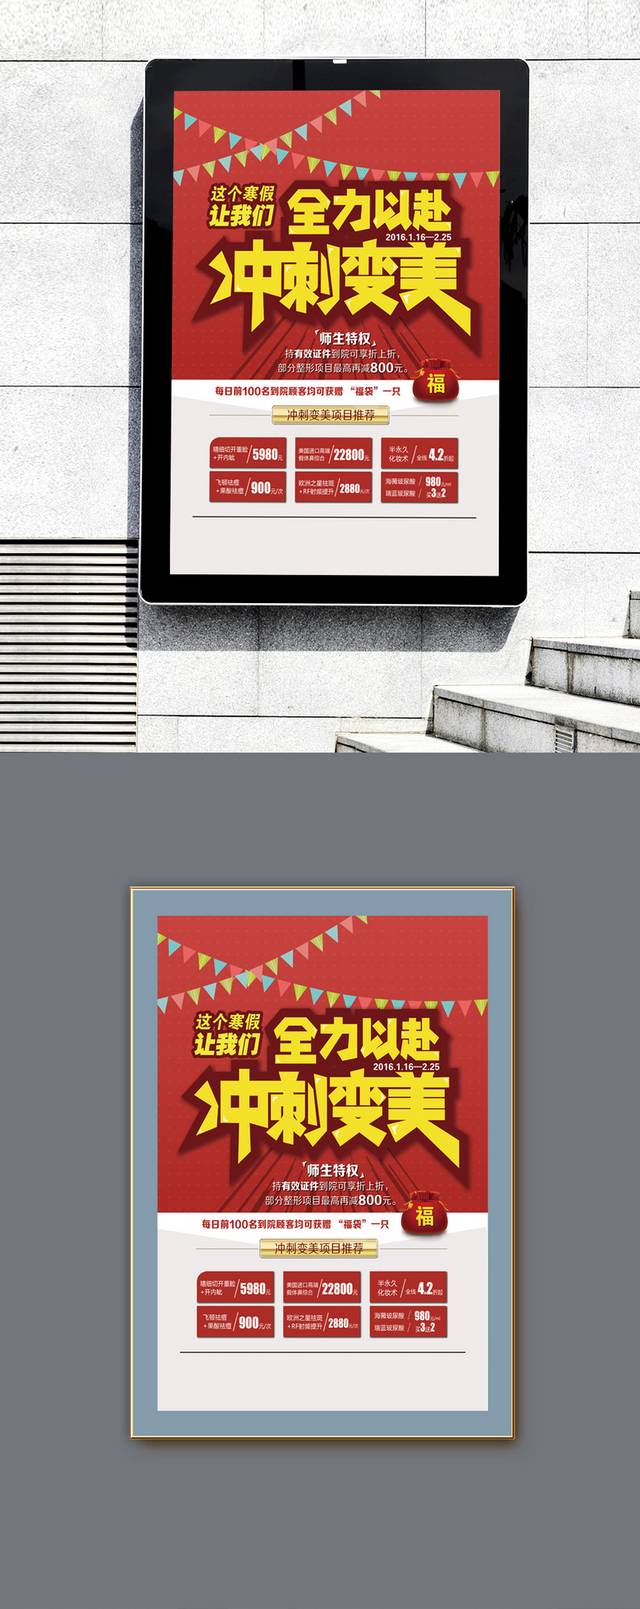 教师节促销宣传海报模板